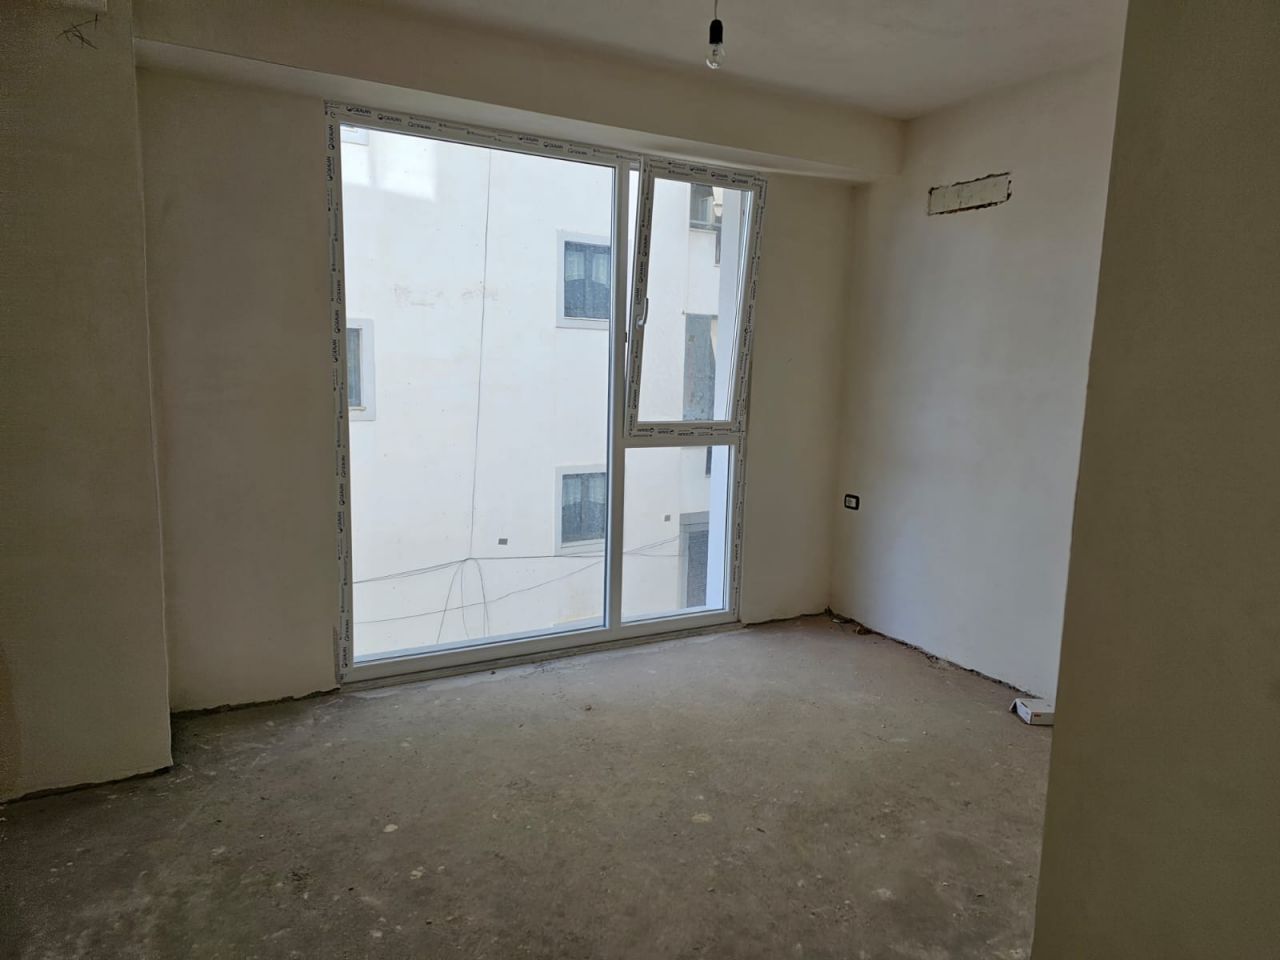 Dwupoziomowy Apartament Na Sprzedaż W Sarandzie, Położony W Spokojnej Okolicy, Niedaleko Plaży